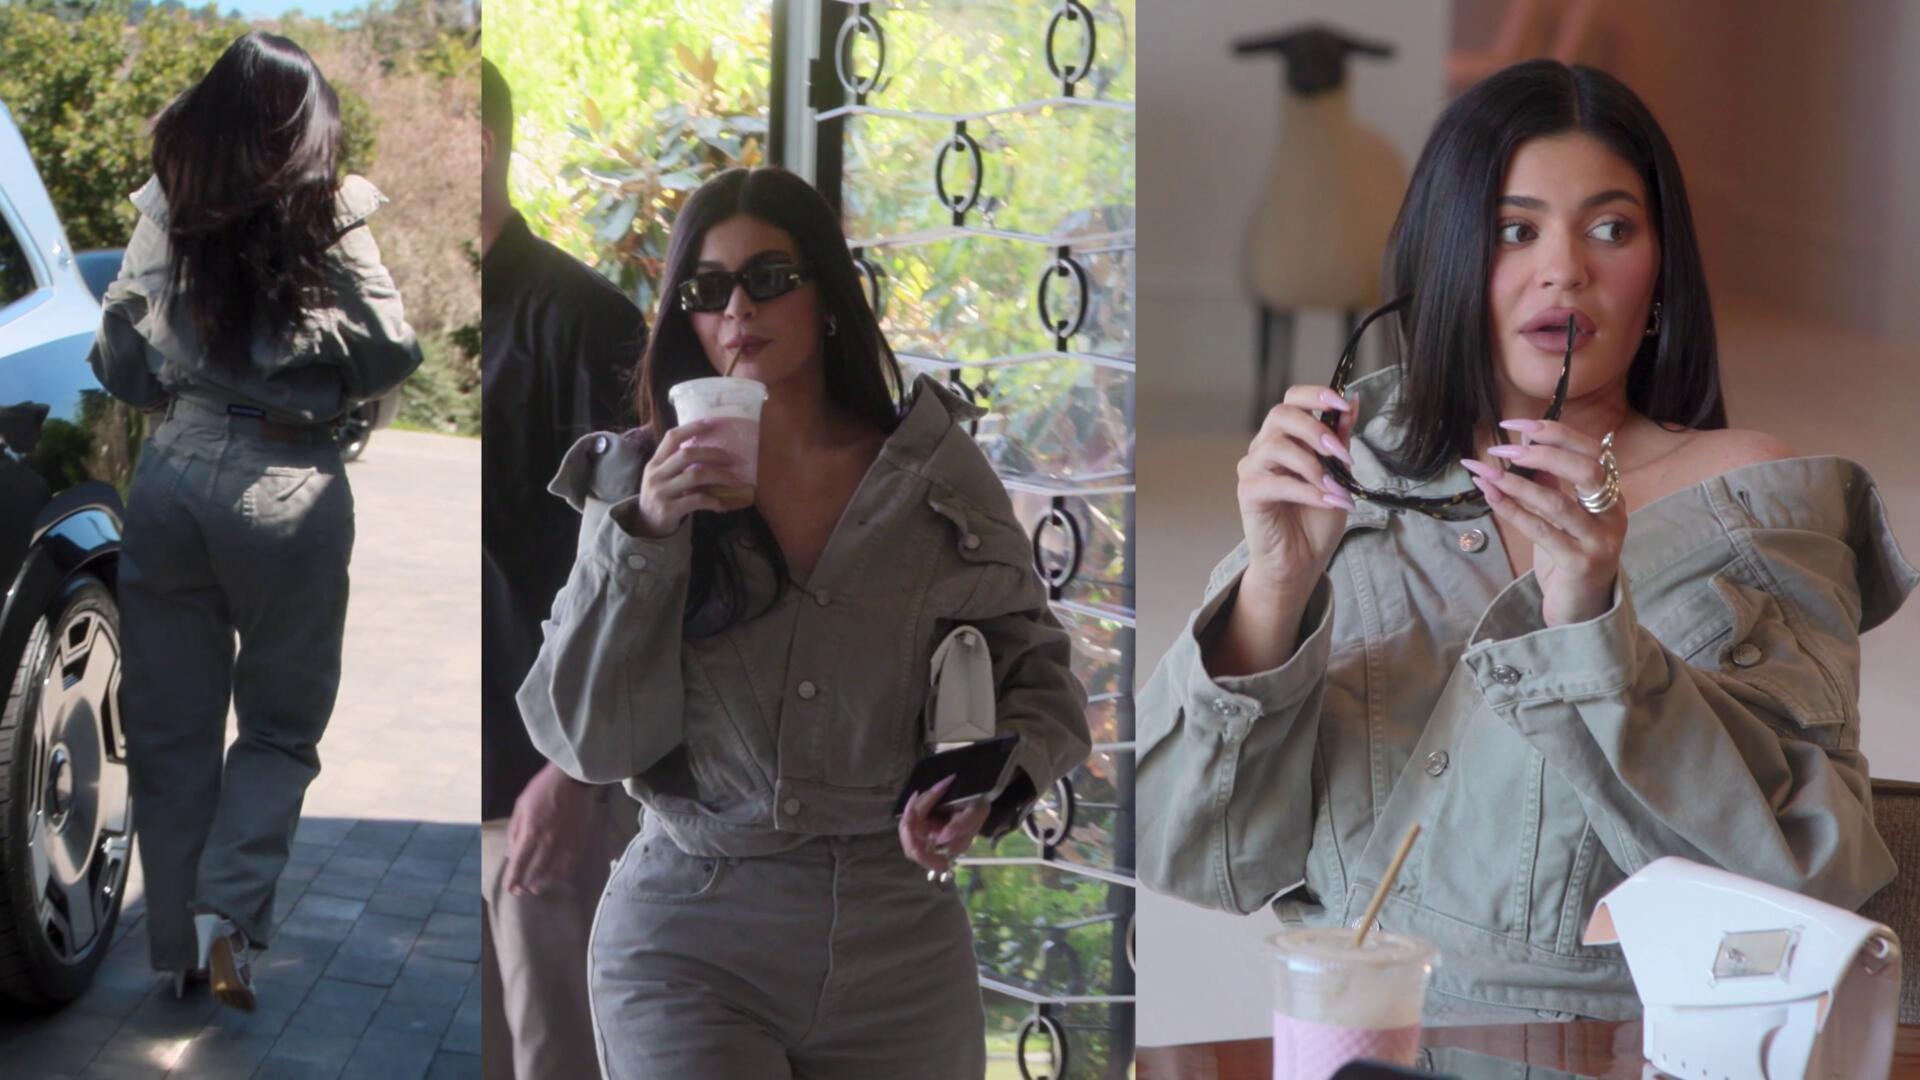 Kylie Jenner – The Kardashians | Season 2 Episode 1 | Kylie Jenner style